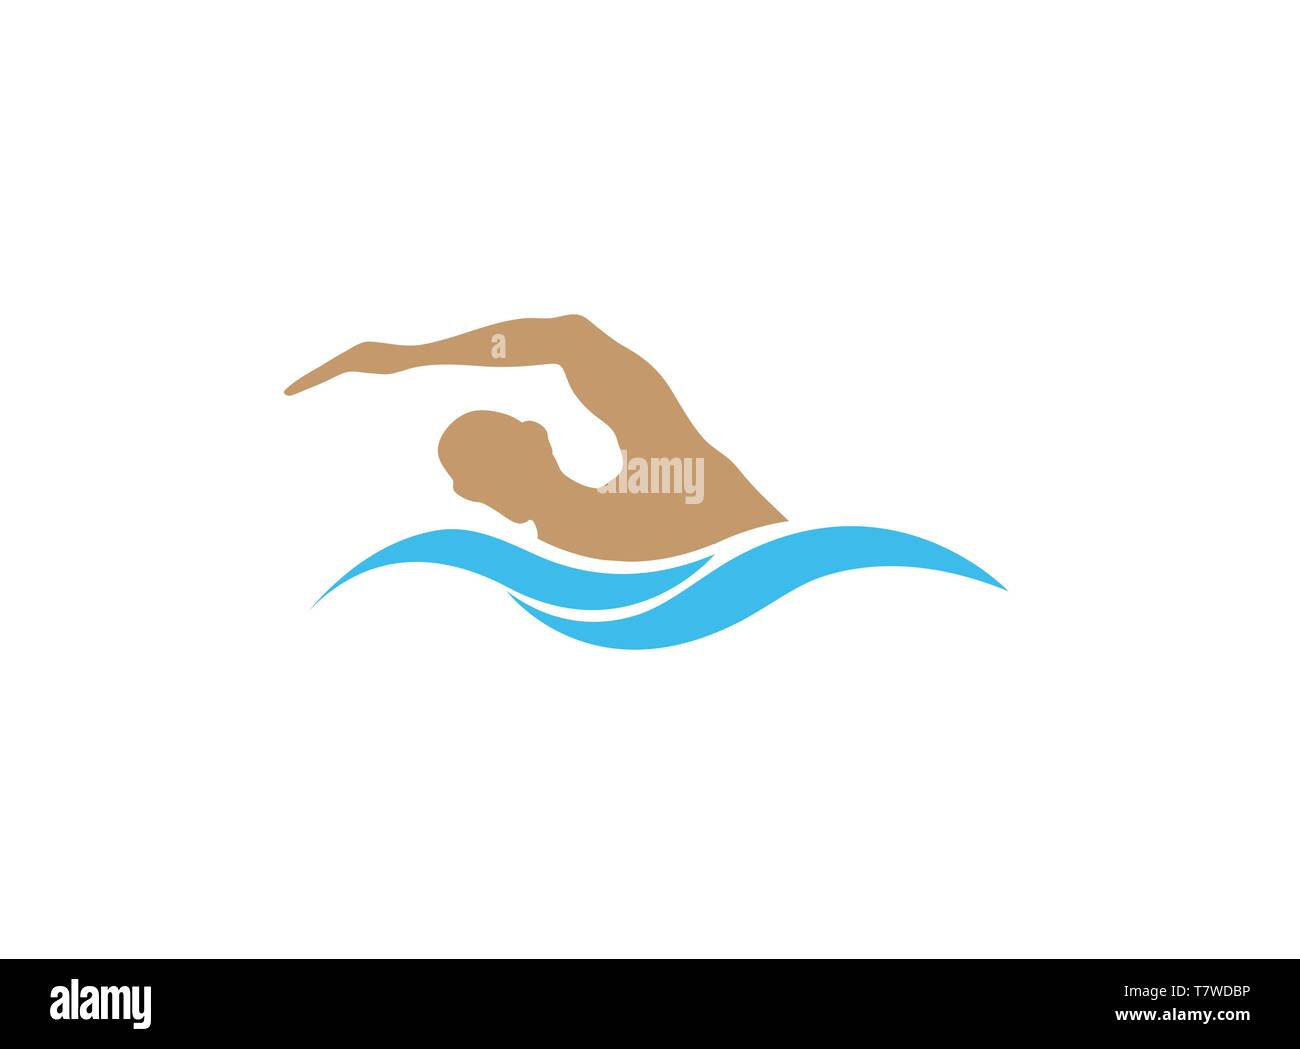 La natation dans la piscine de conception de logo pour Triathlon Illustration de Vecteur